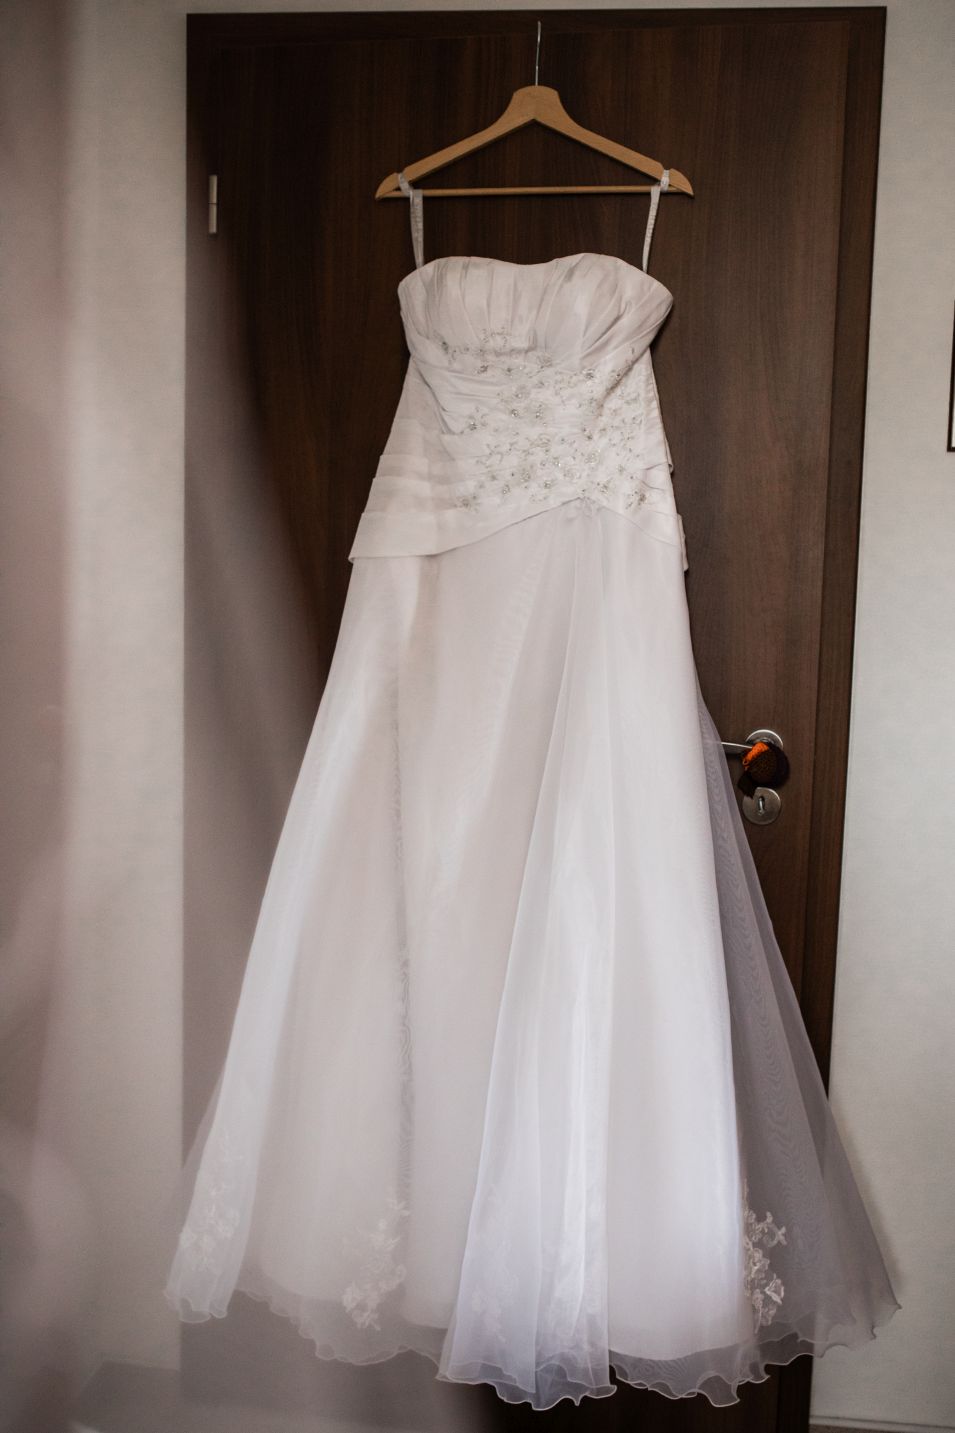 Bílé svatební šaty - Obrázek č. 1